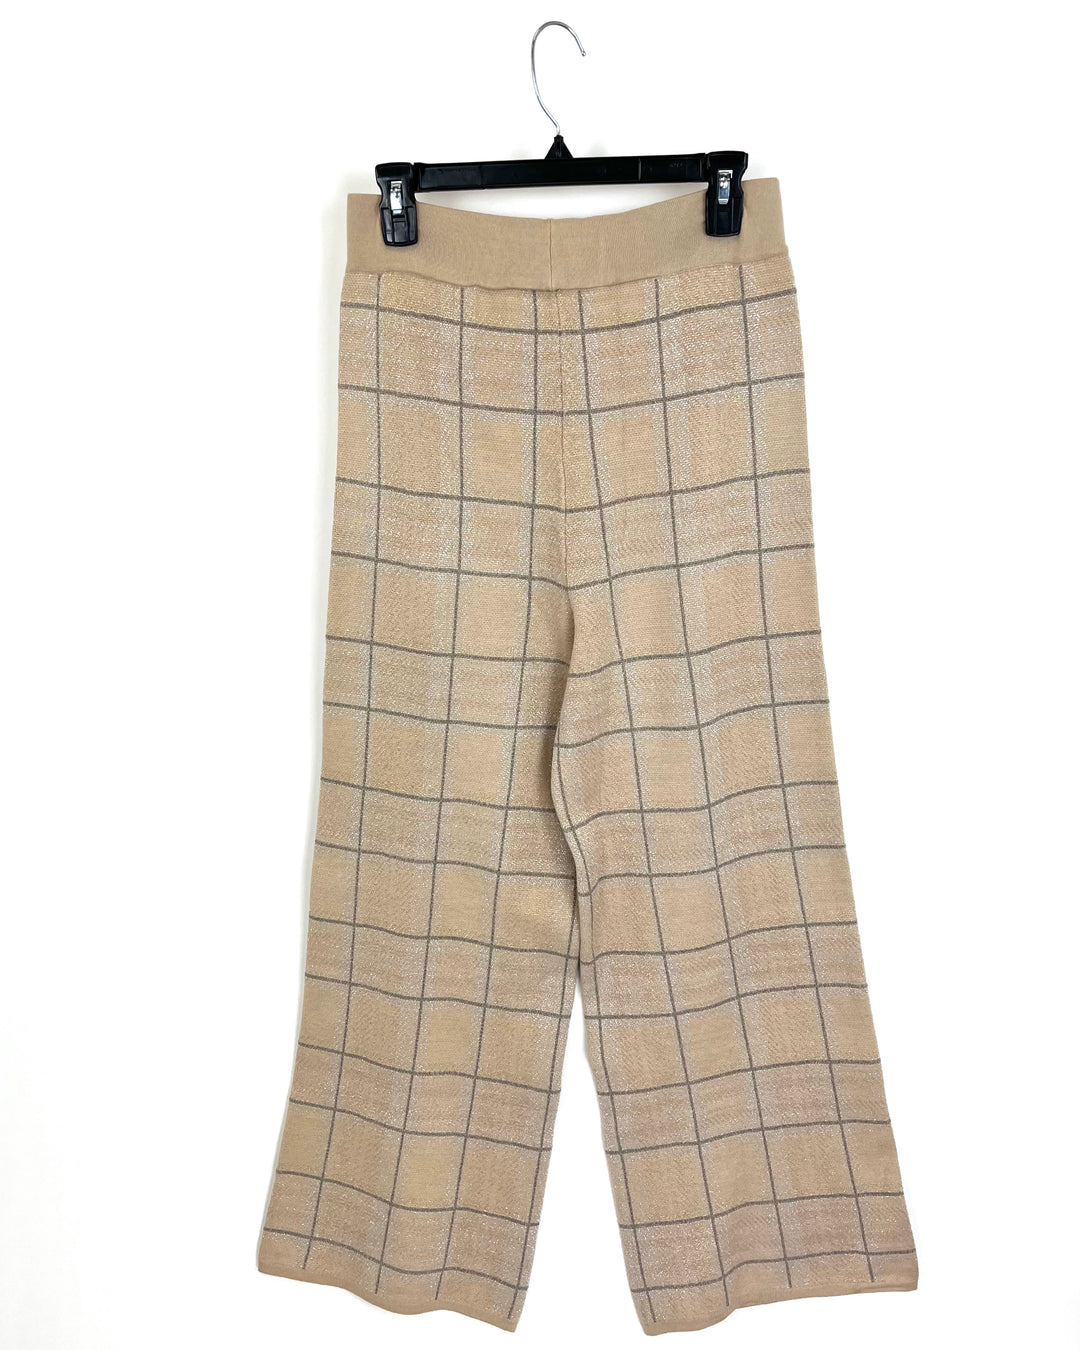 Light Brown Metallic Checker Print Pants - Size 4/6